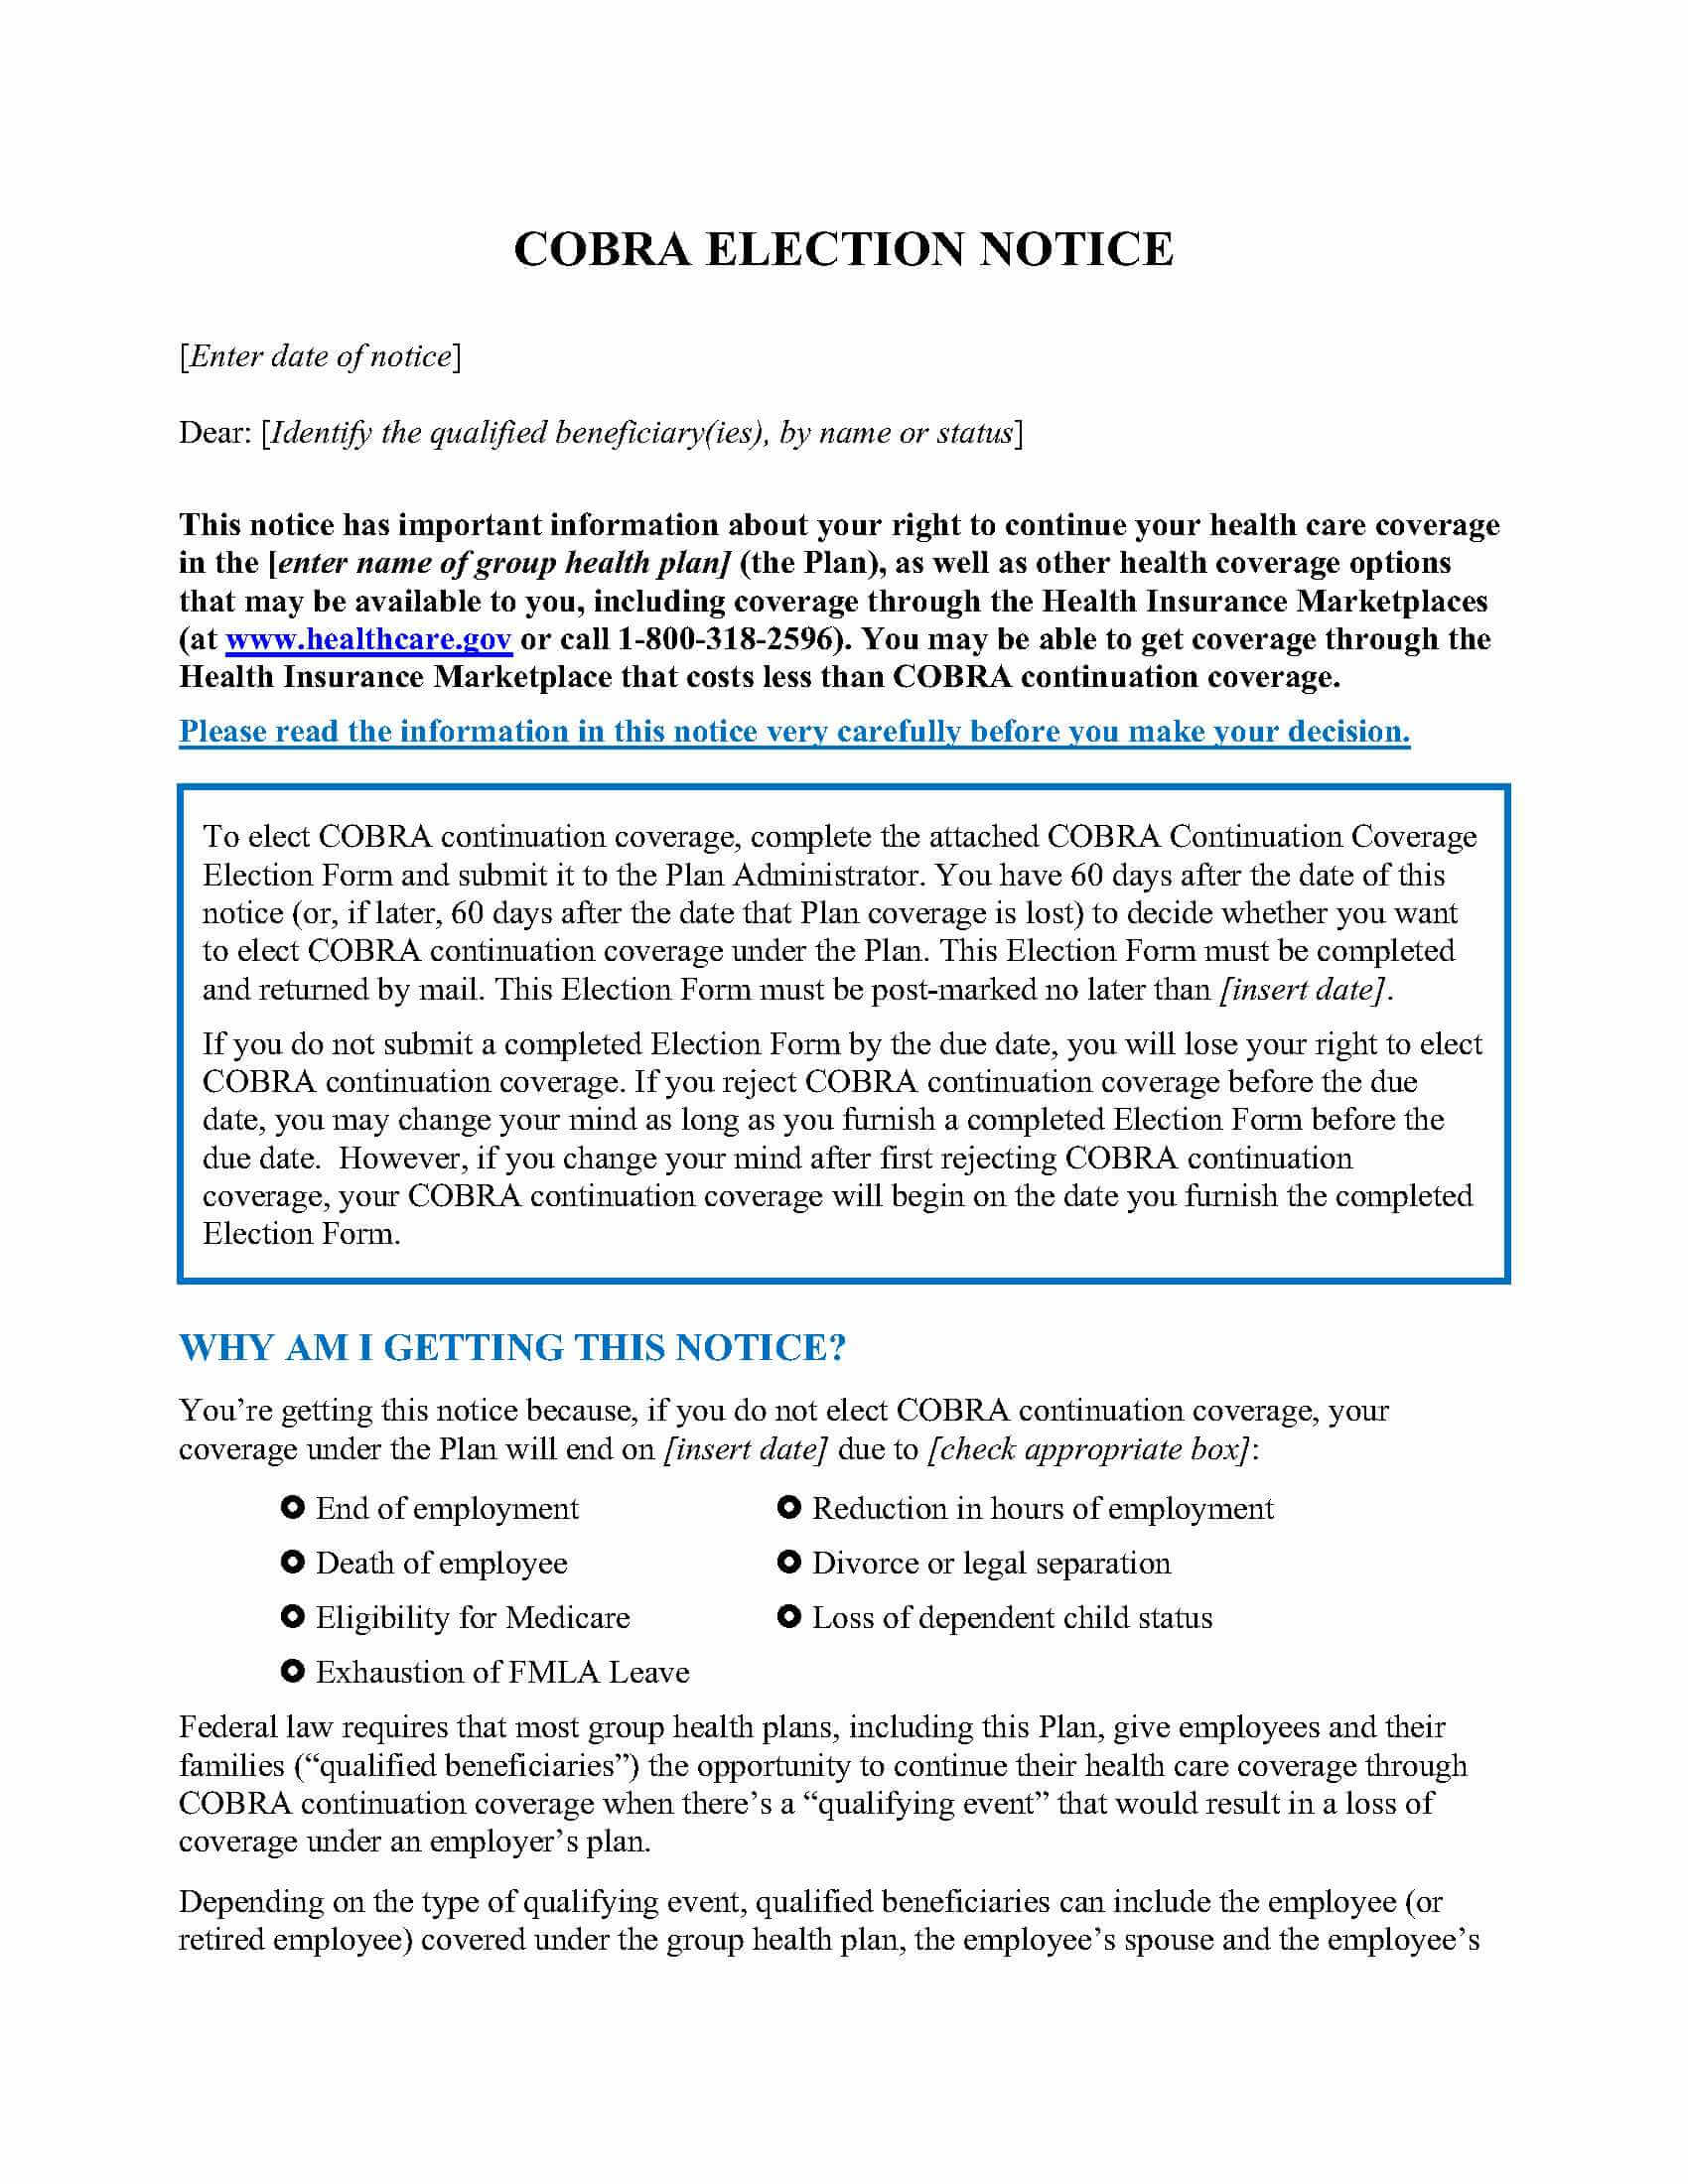 Sample COBRA Election Notice (Zywave) 06 13 17